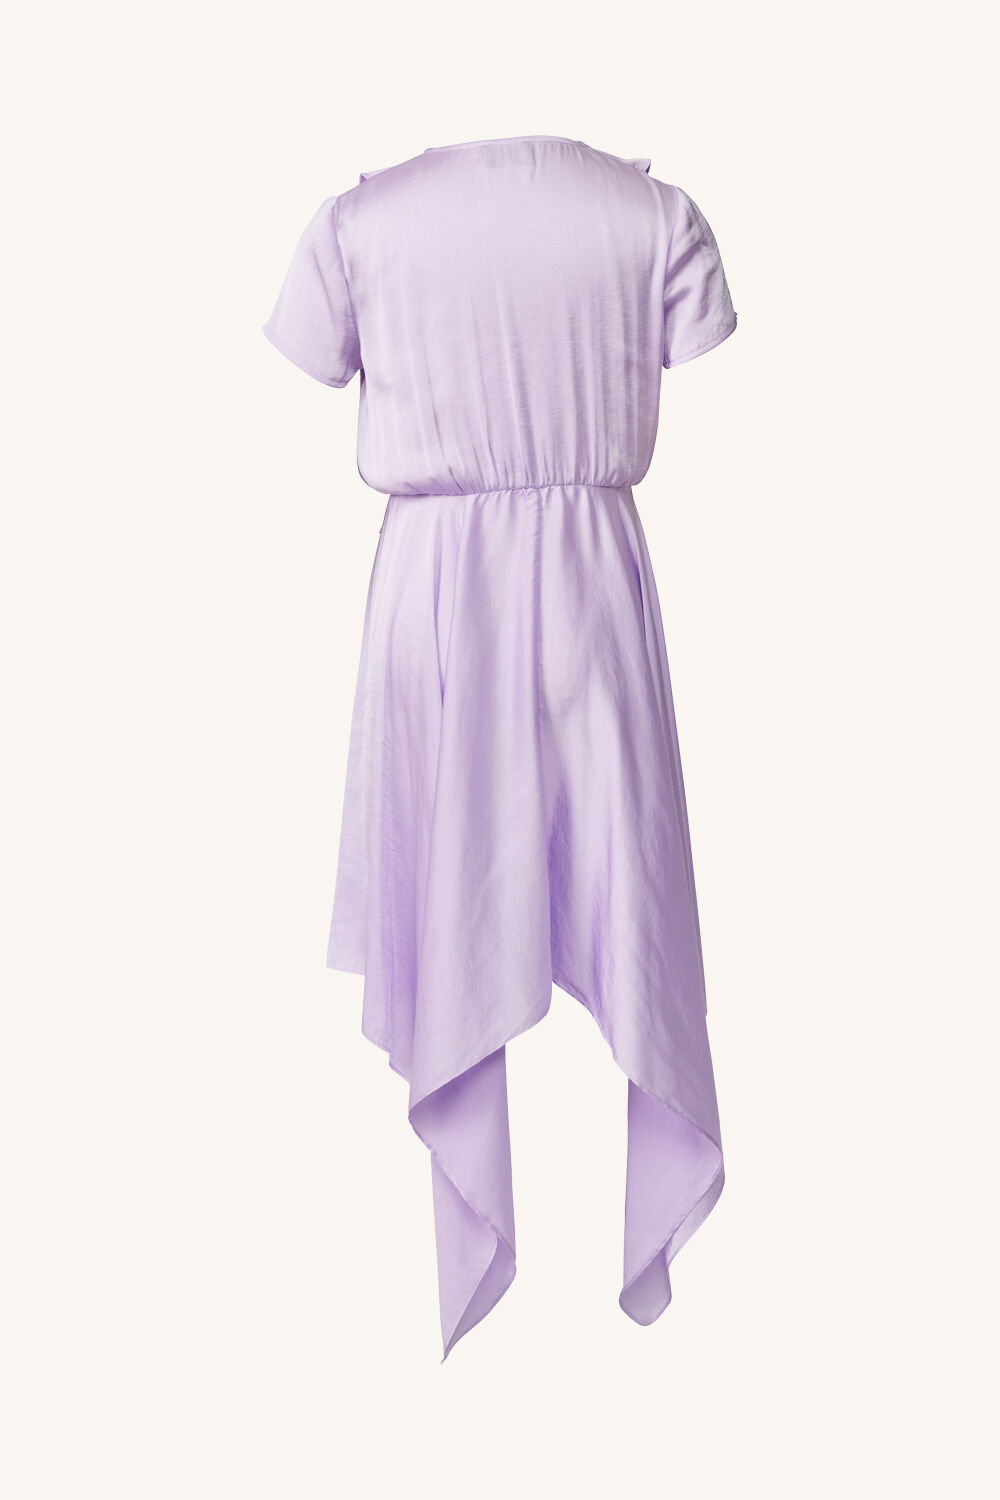 GIRLS CARTER HANKY DRESS in colour LILAC CHIFFON